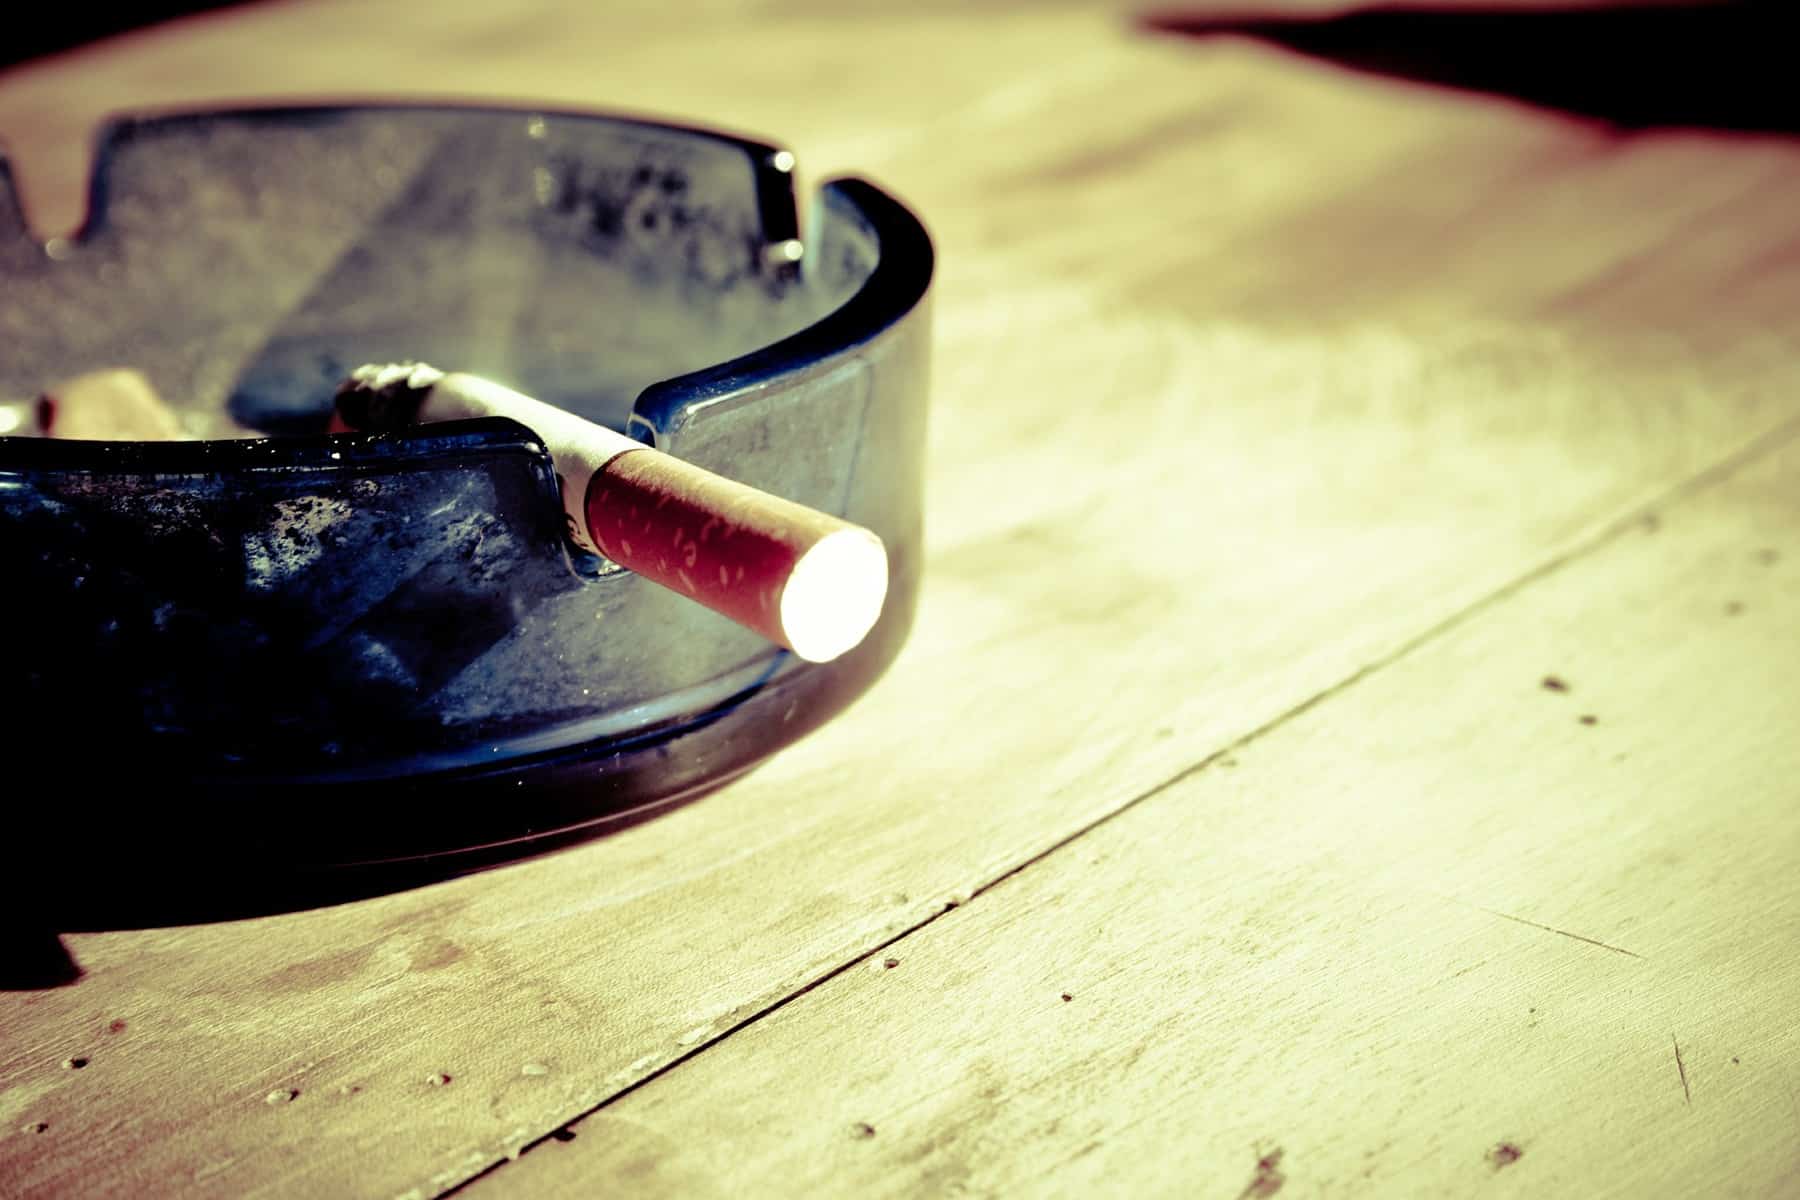 noua zeelandă vrea să devină „țara nefumătorilor” - care este planul concret